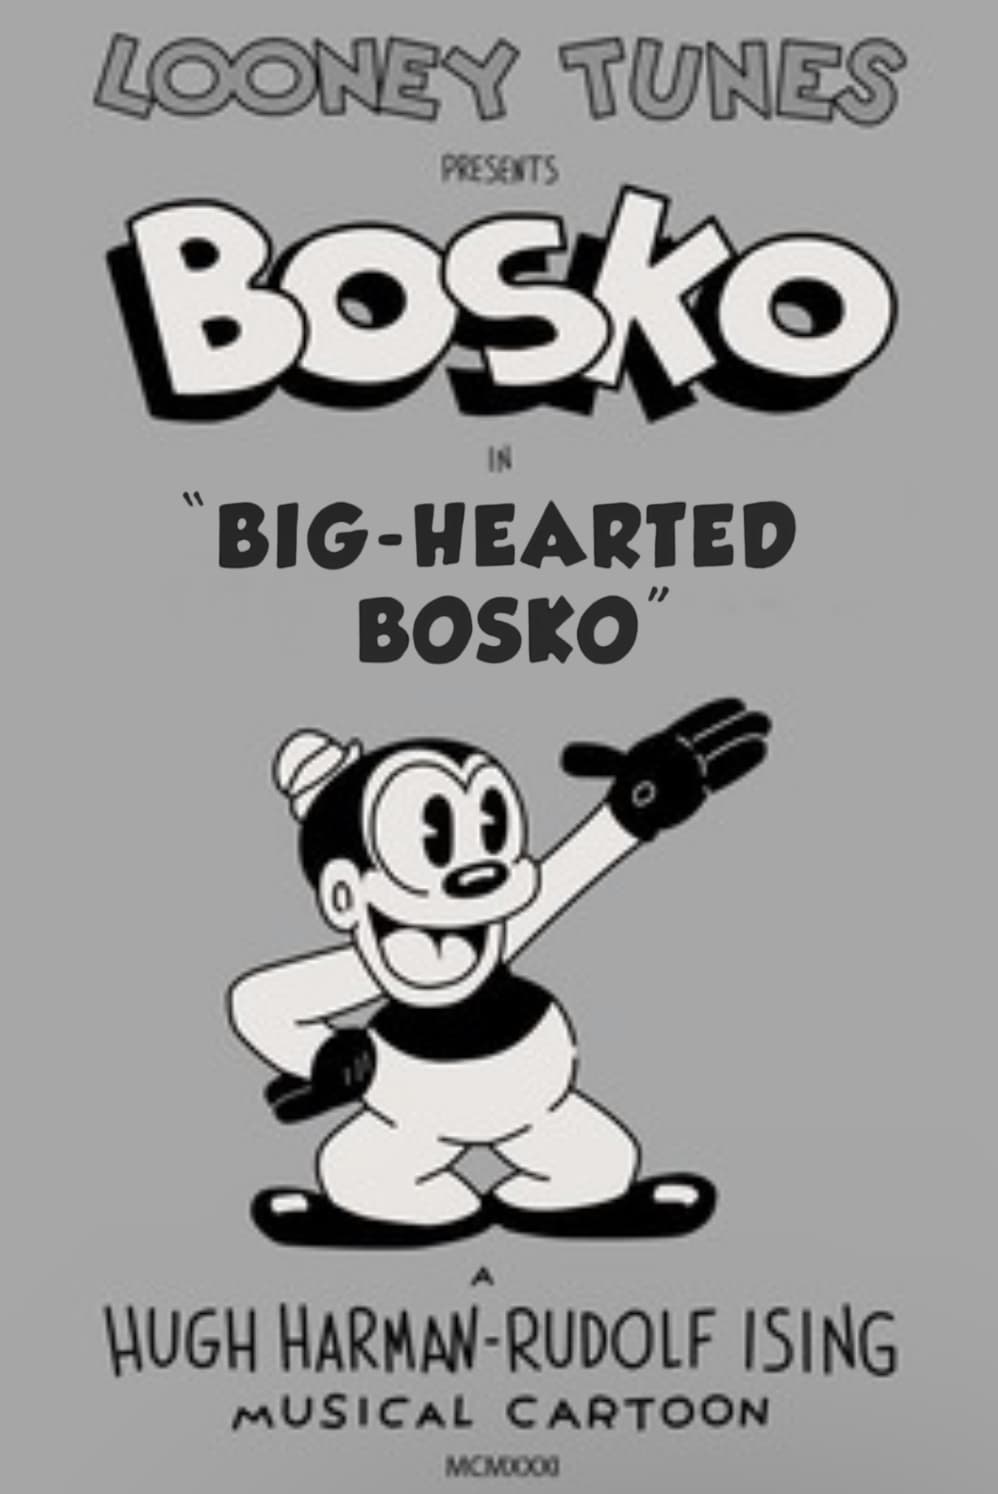 Big-Hearted Bosko